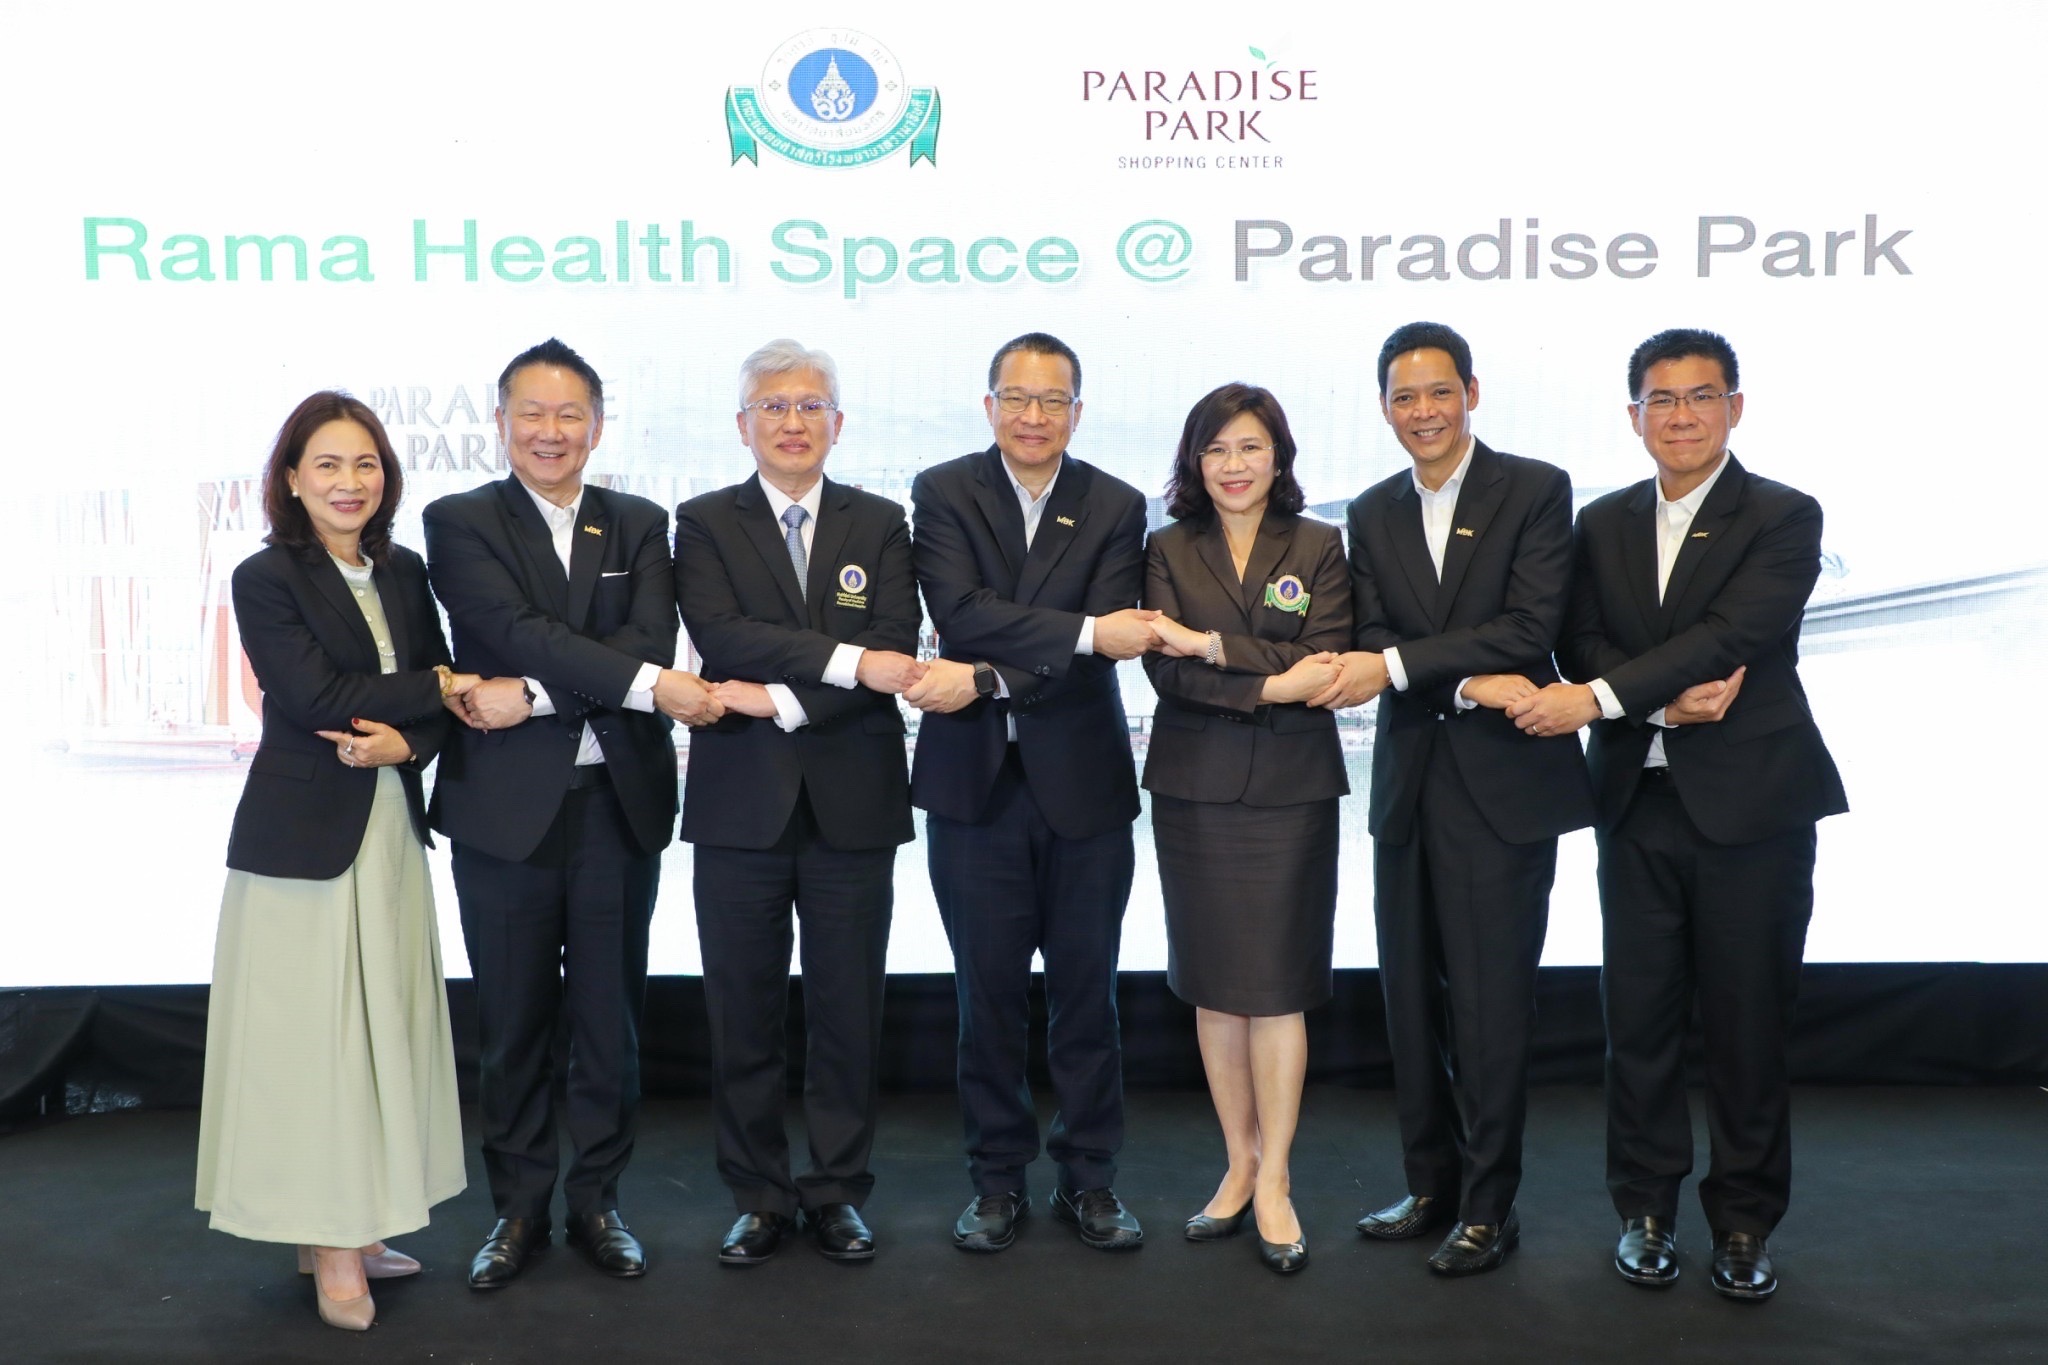 โรงพยาบาลรามาธิบดี จับมือ พาราไดซ์ พาร์ค เปิด Ramathibodi Health Space @ Paradise Park